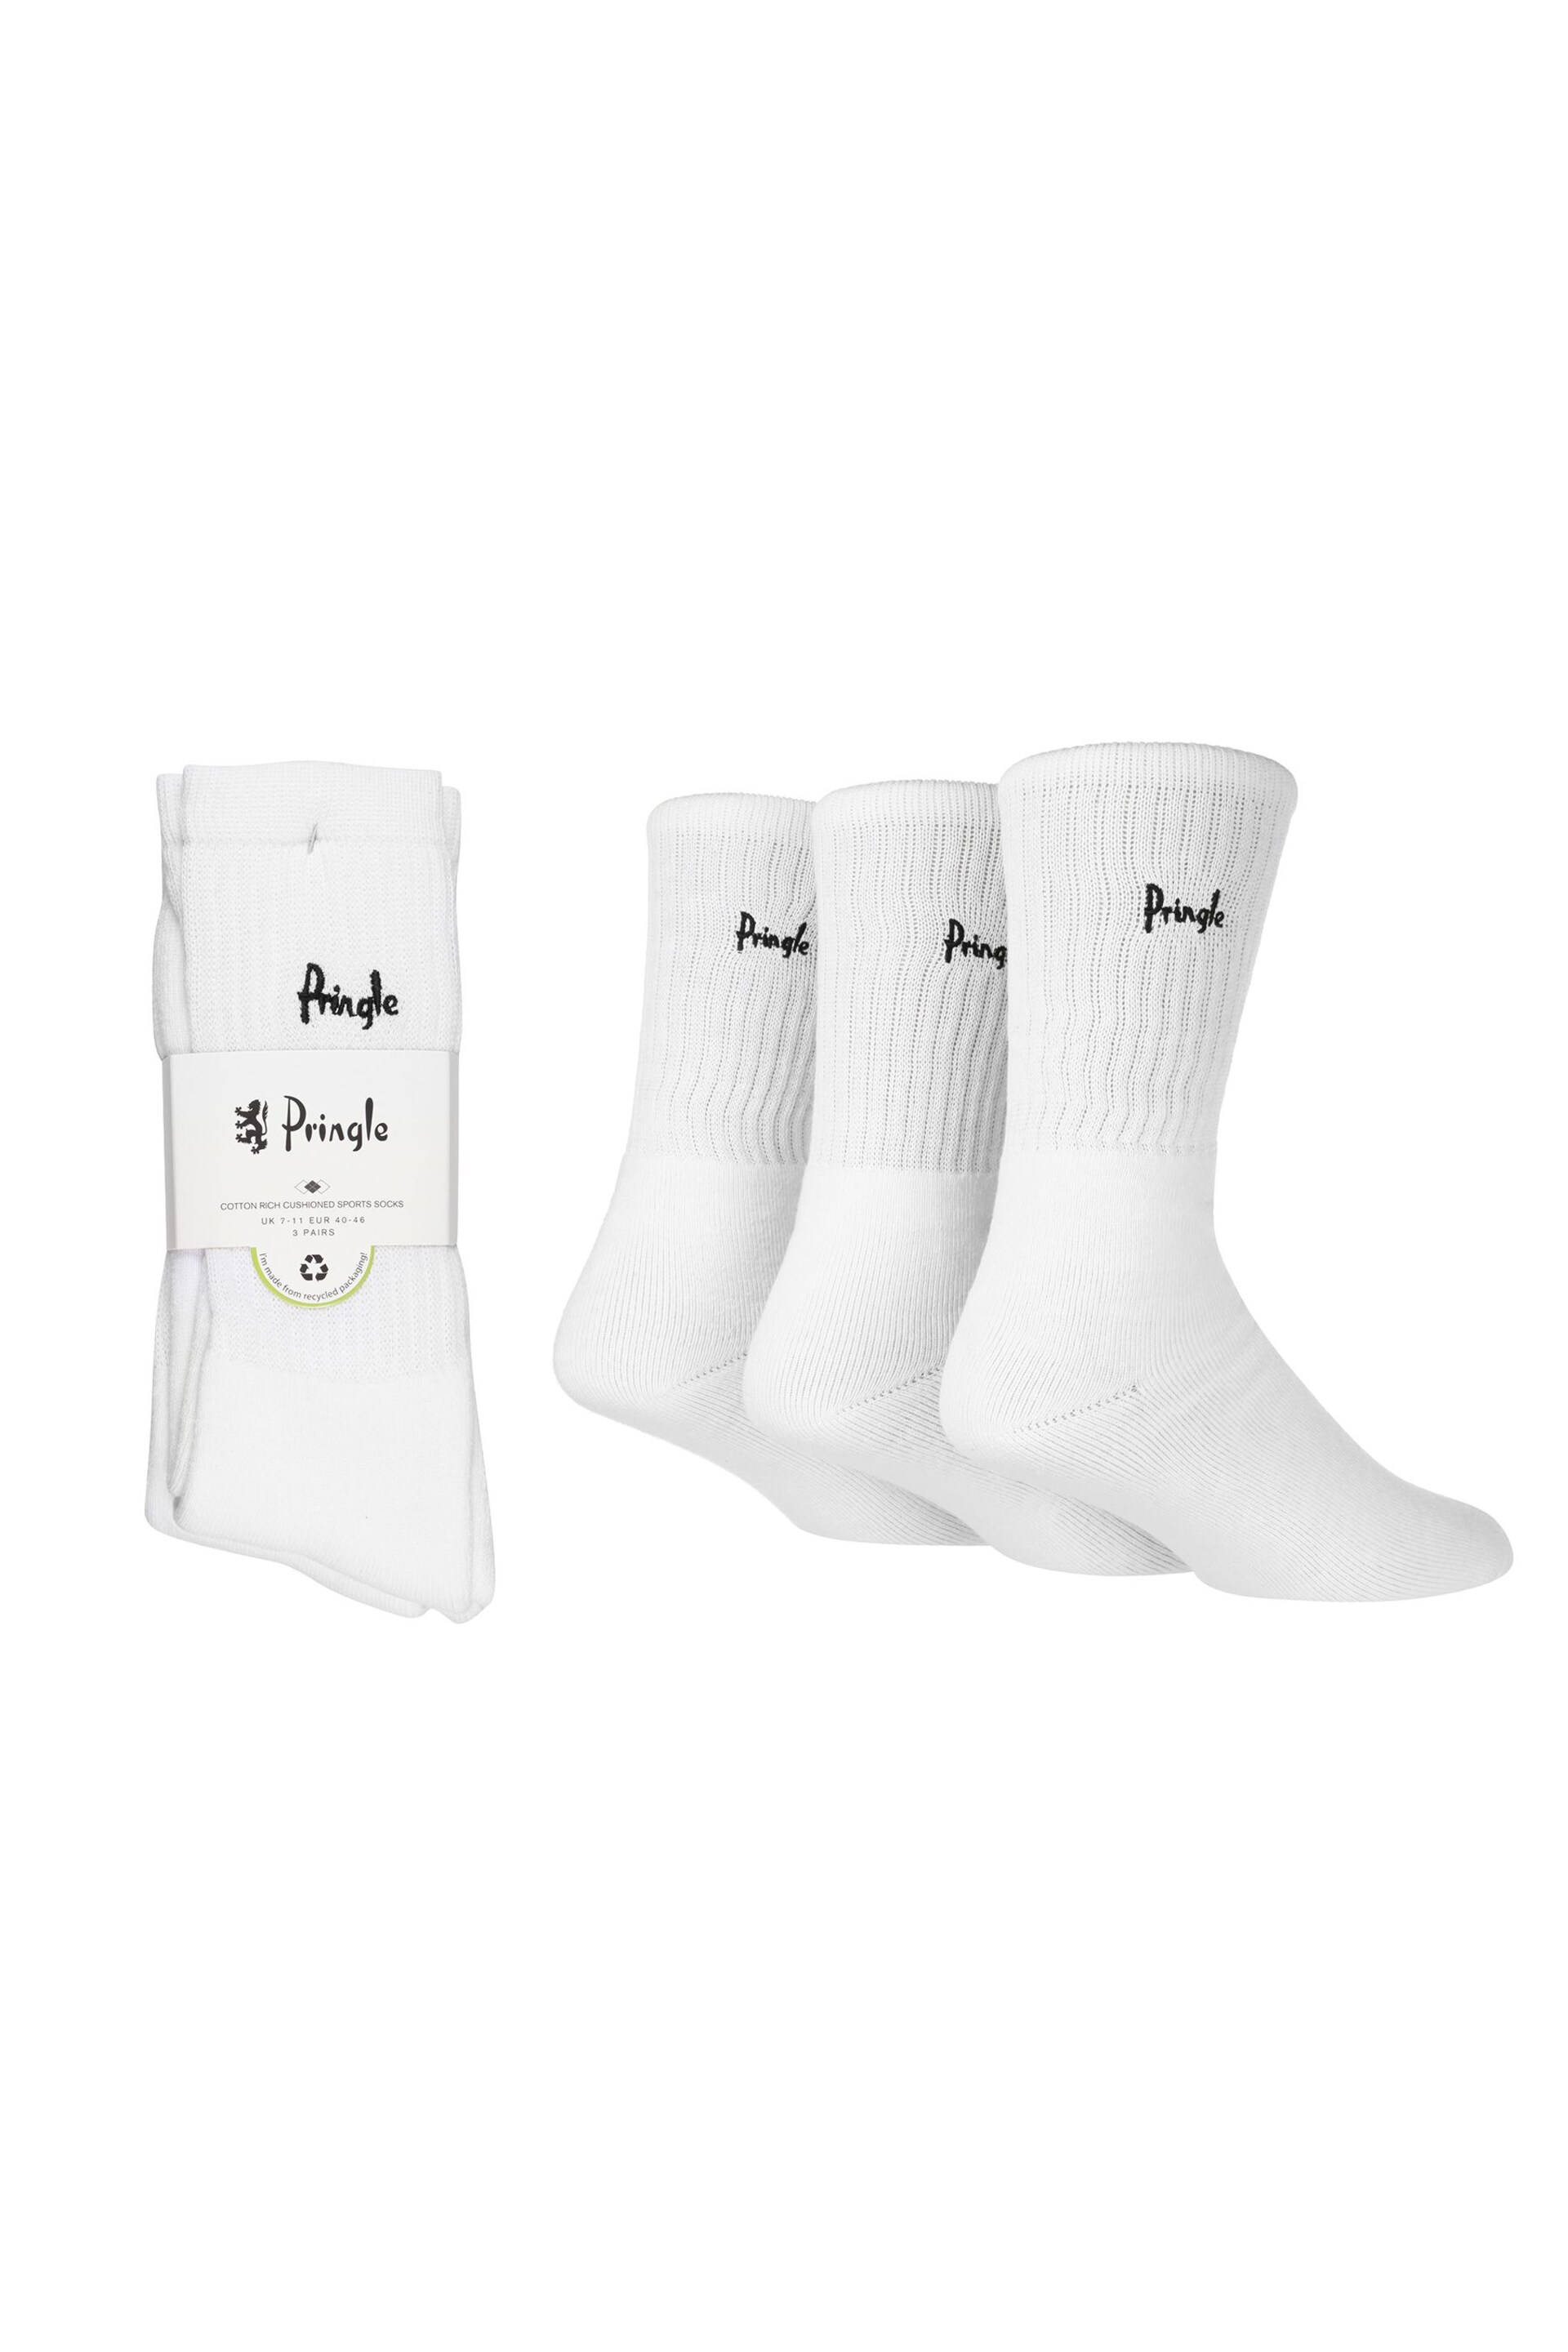 Pringle White Sports Socks - Image 1 of 7